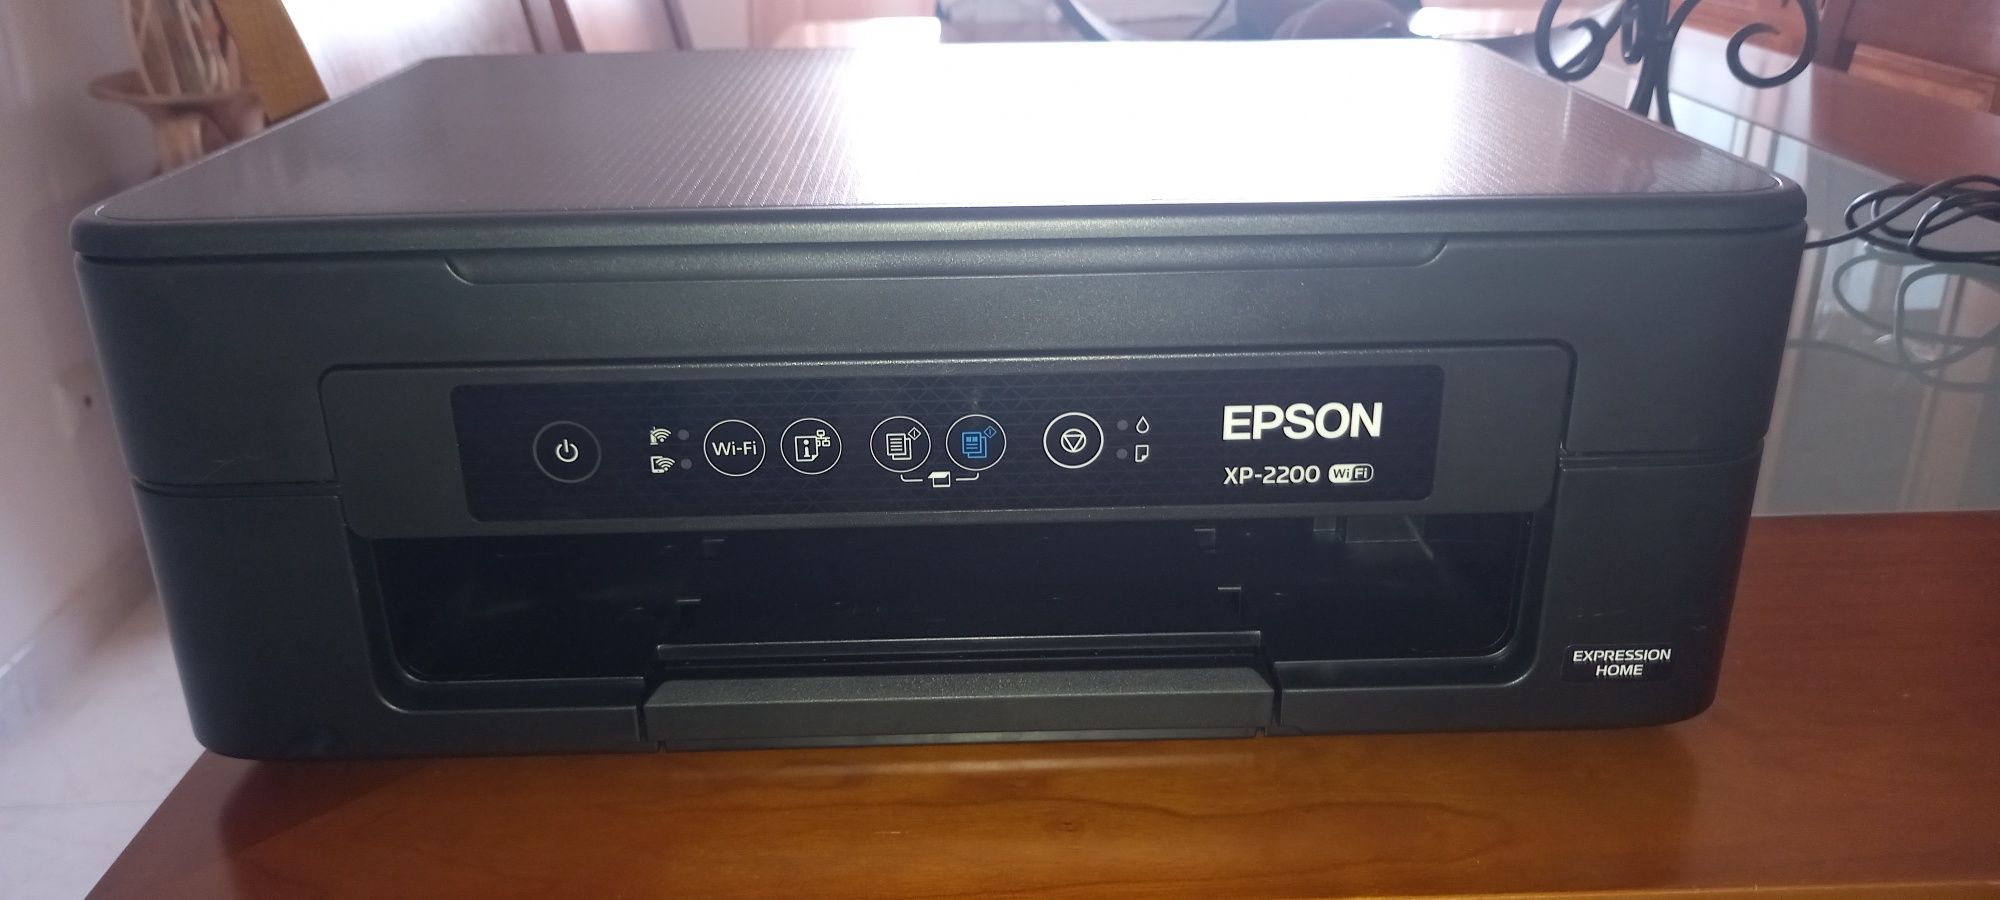 Impressora multi-funções EPSON XP-2200 com WI-FI.